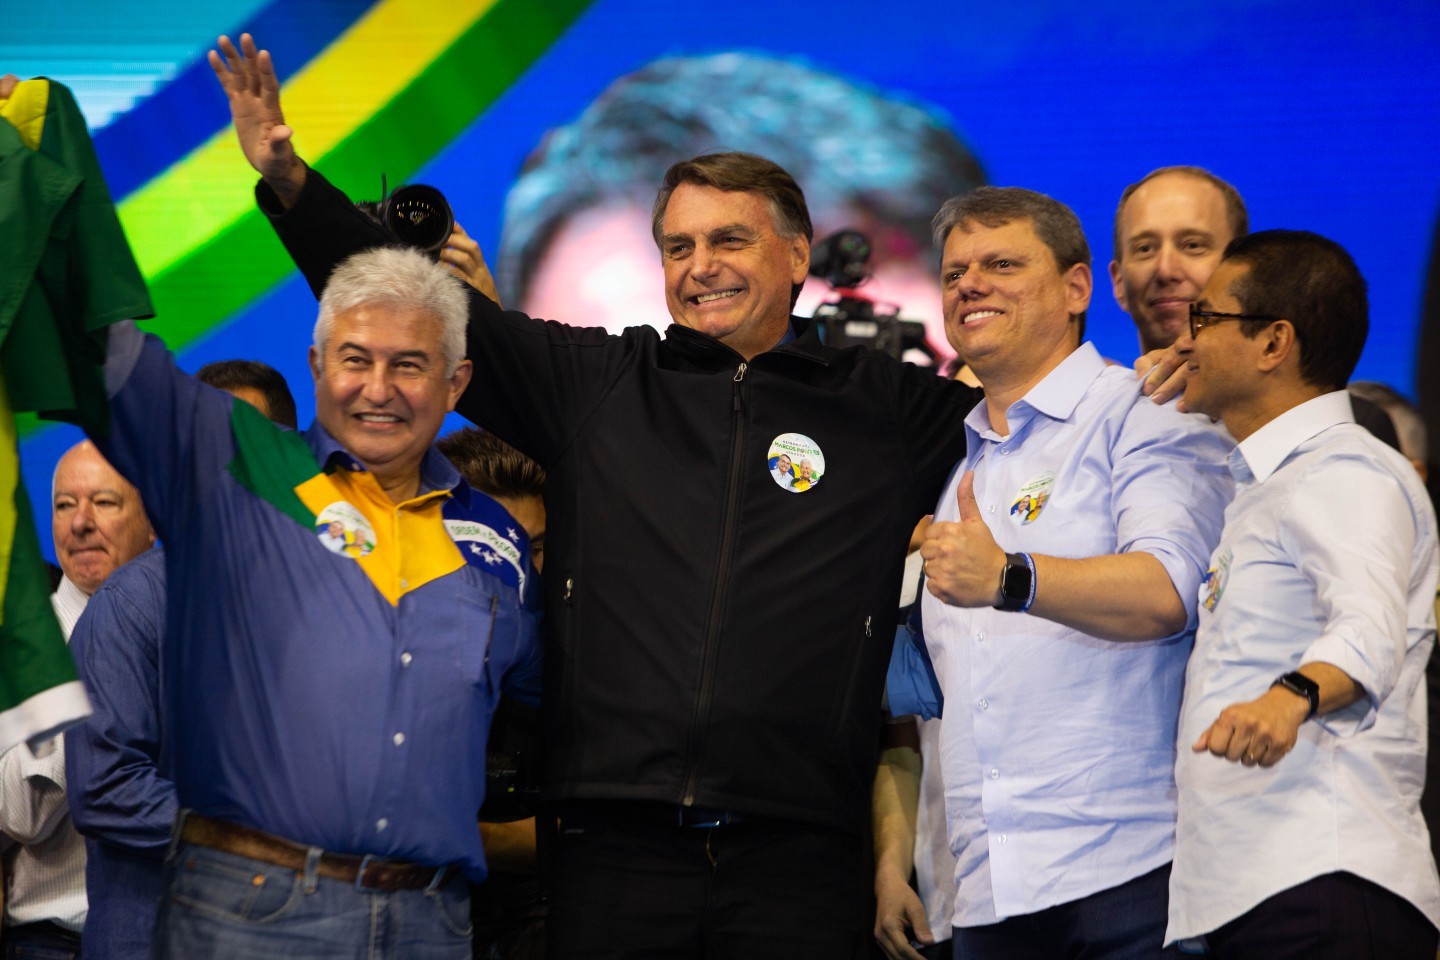 Ex-ministro Marcos Pontes, Bolsonaro e Tarcísio de Freitas na convenção do Republicanos, em SP — Foto: Maria Isabel Oliveira